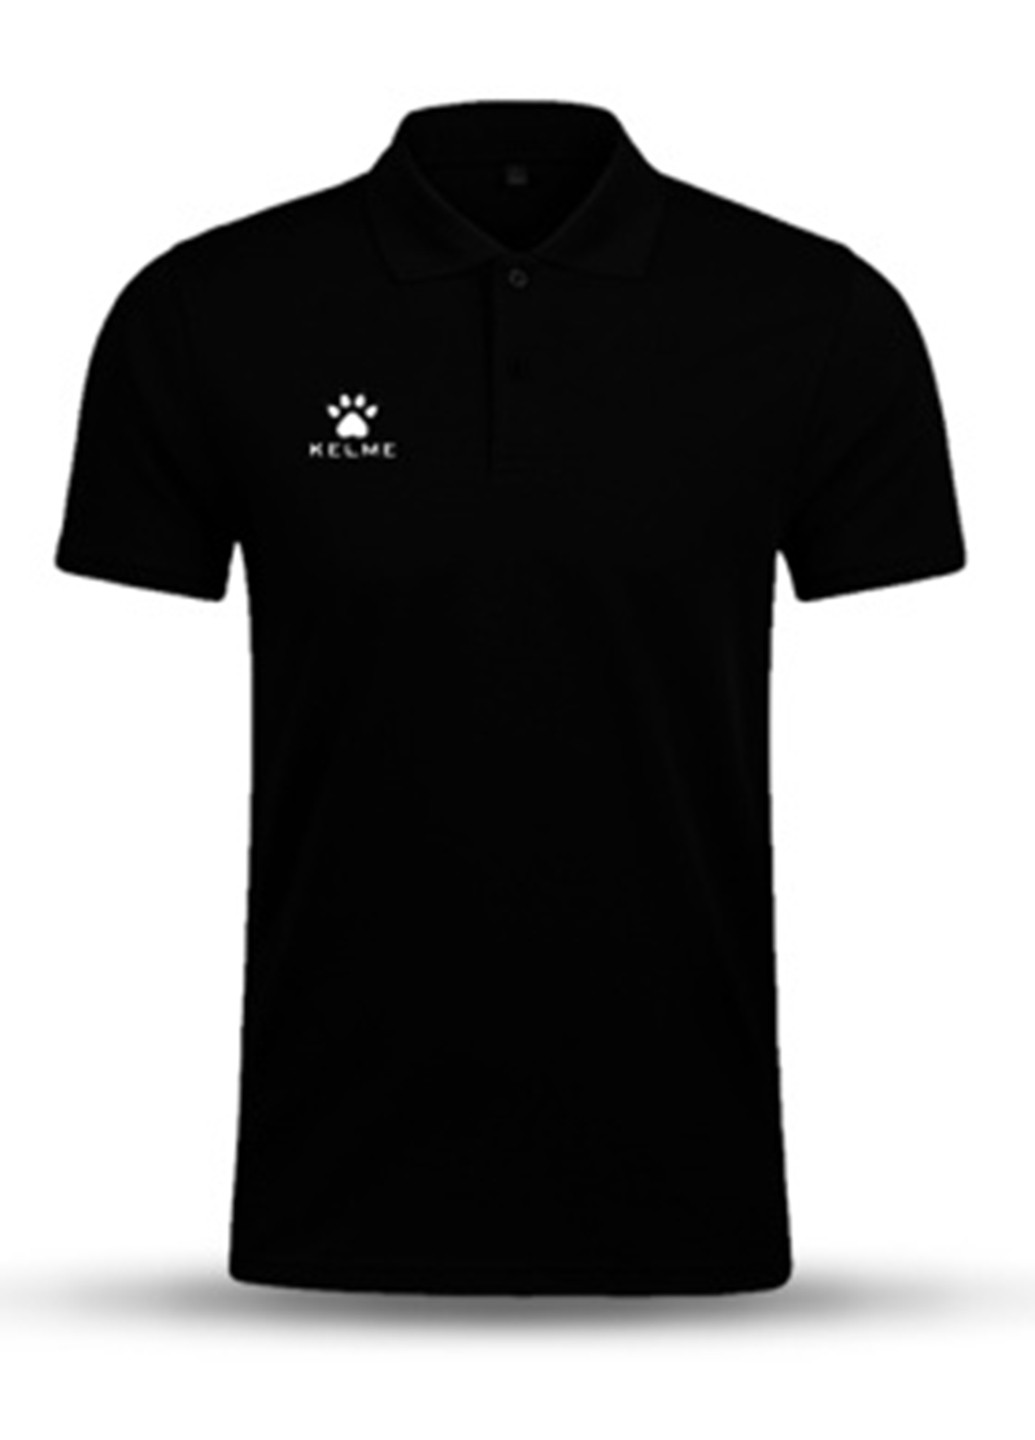 Черная футболка-поло для мужчин Kelme однотонная